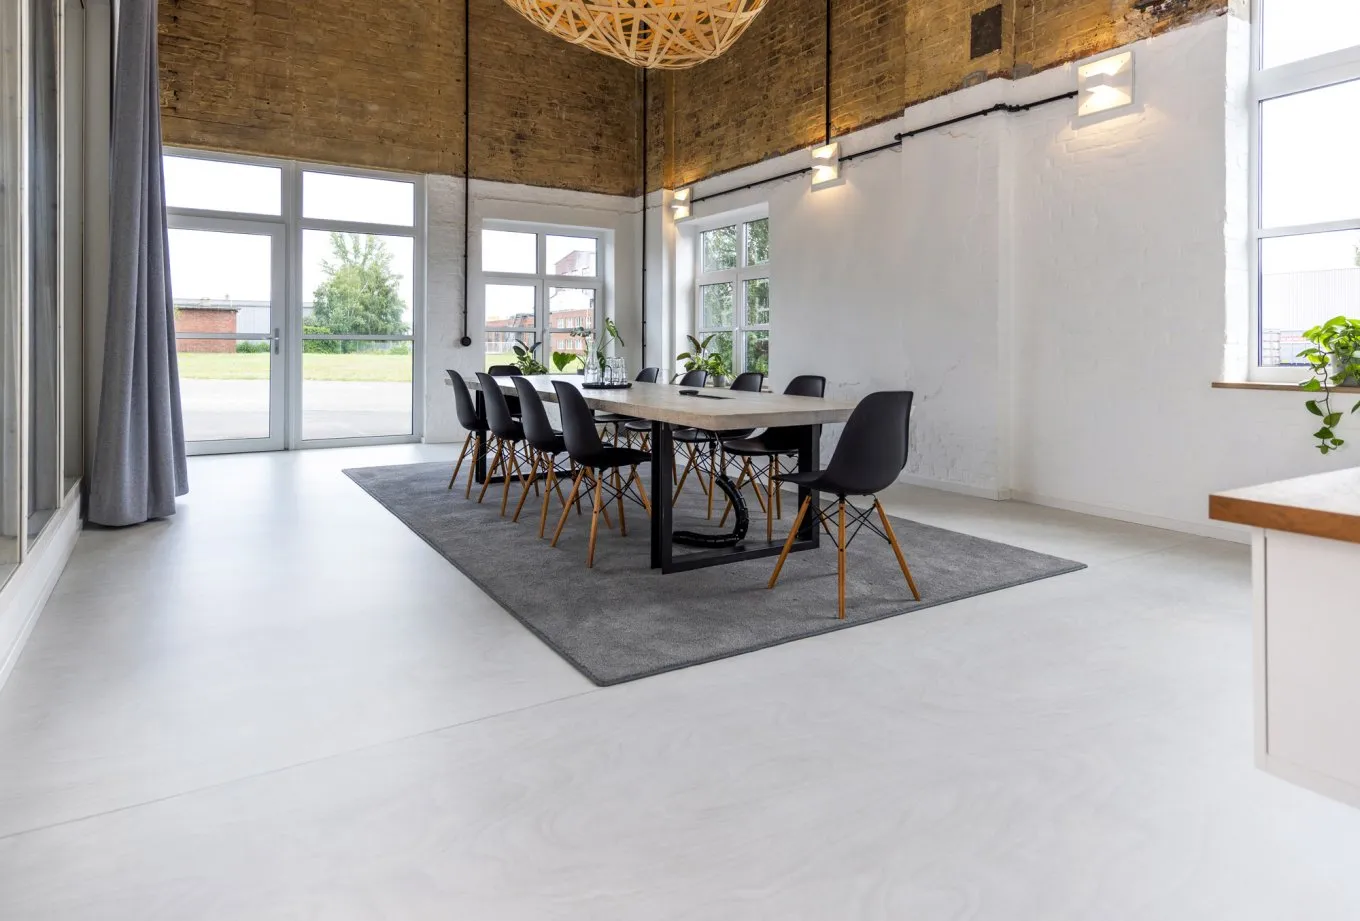 Besprechungsraum im Loft Style mit modernen Möbeln und hellem wineo PURLINE Bioboden